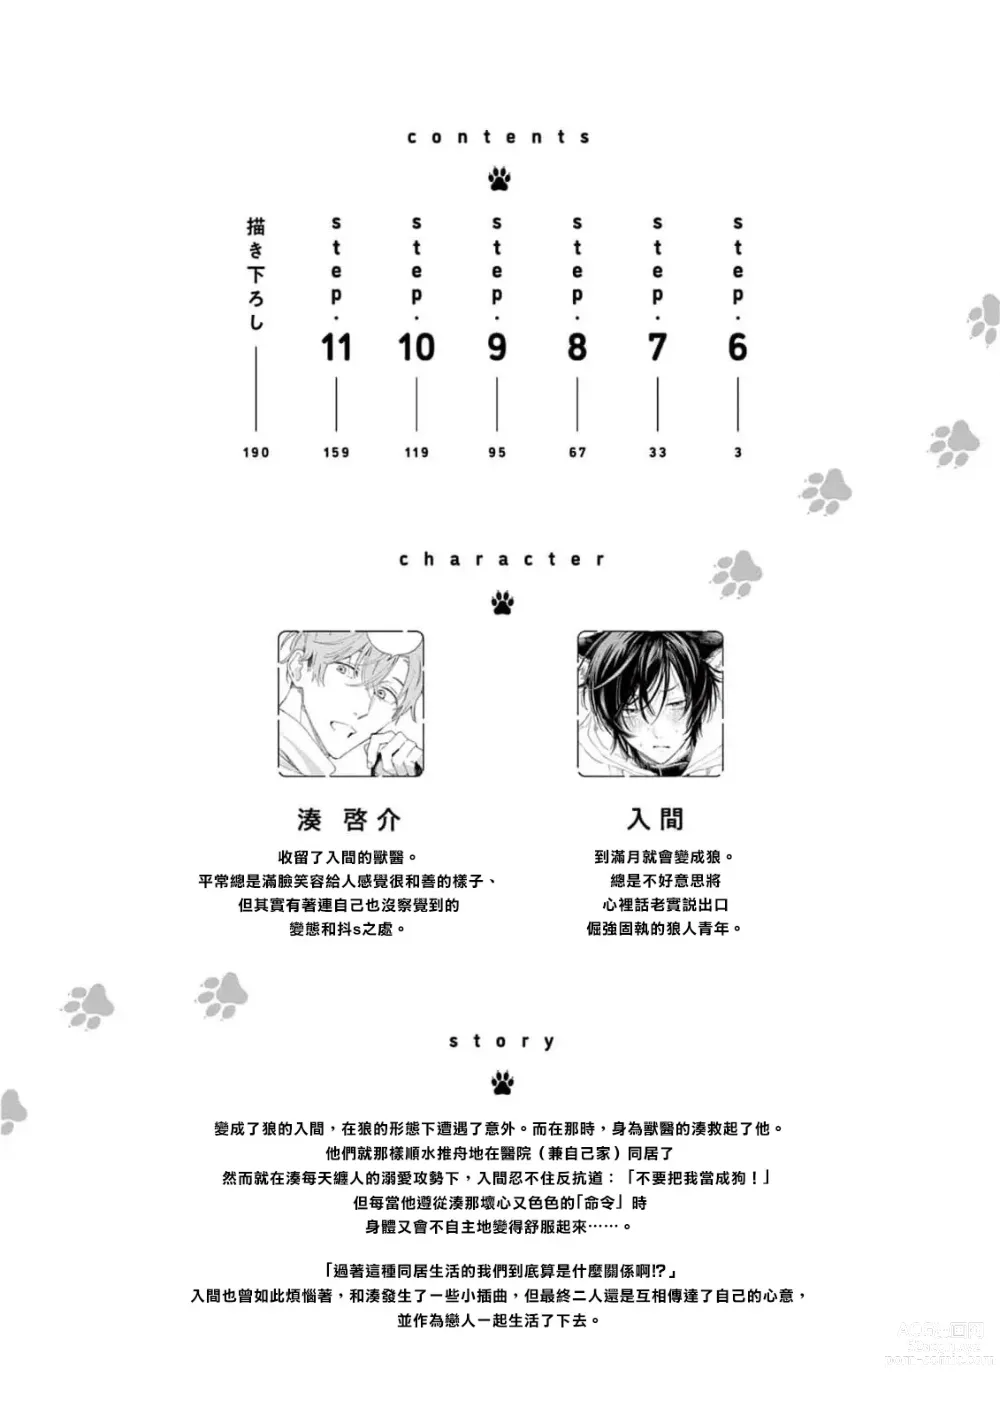 Page 4 of manga 服从与轻咬2 06-11